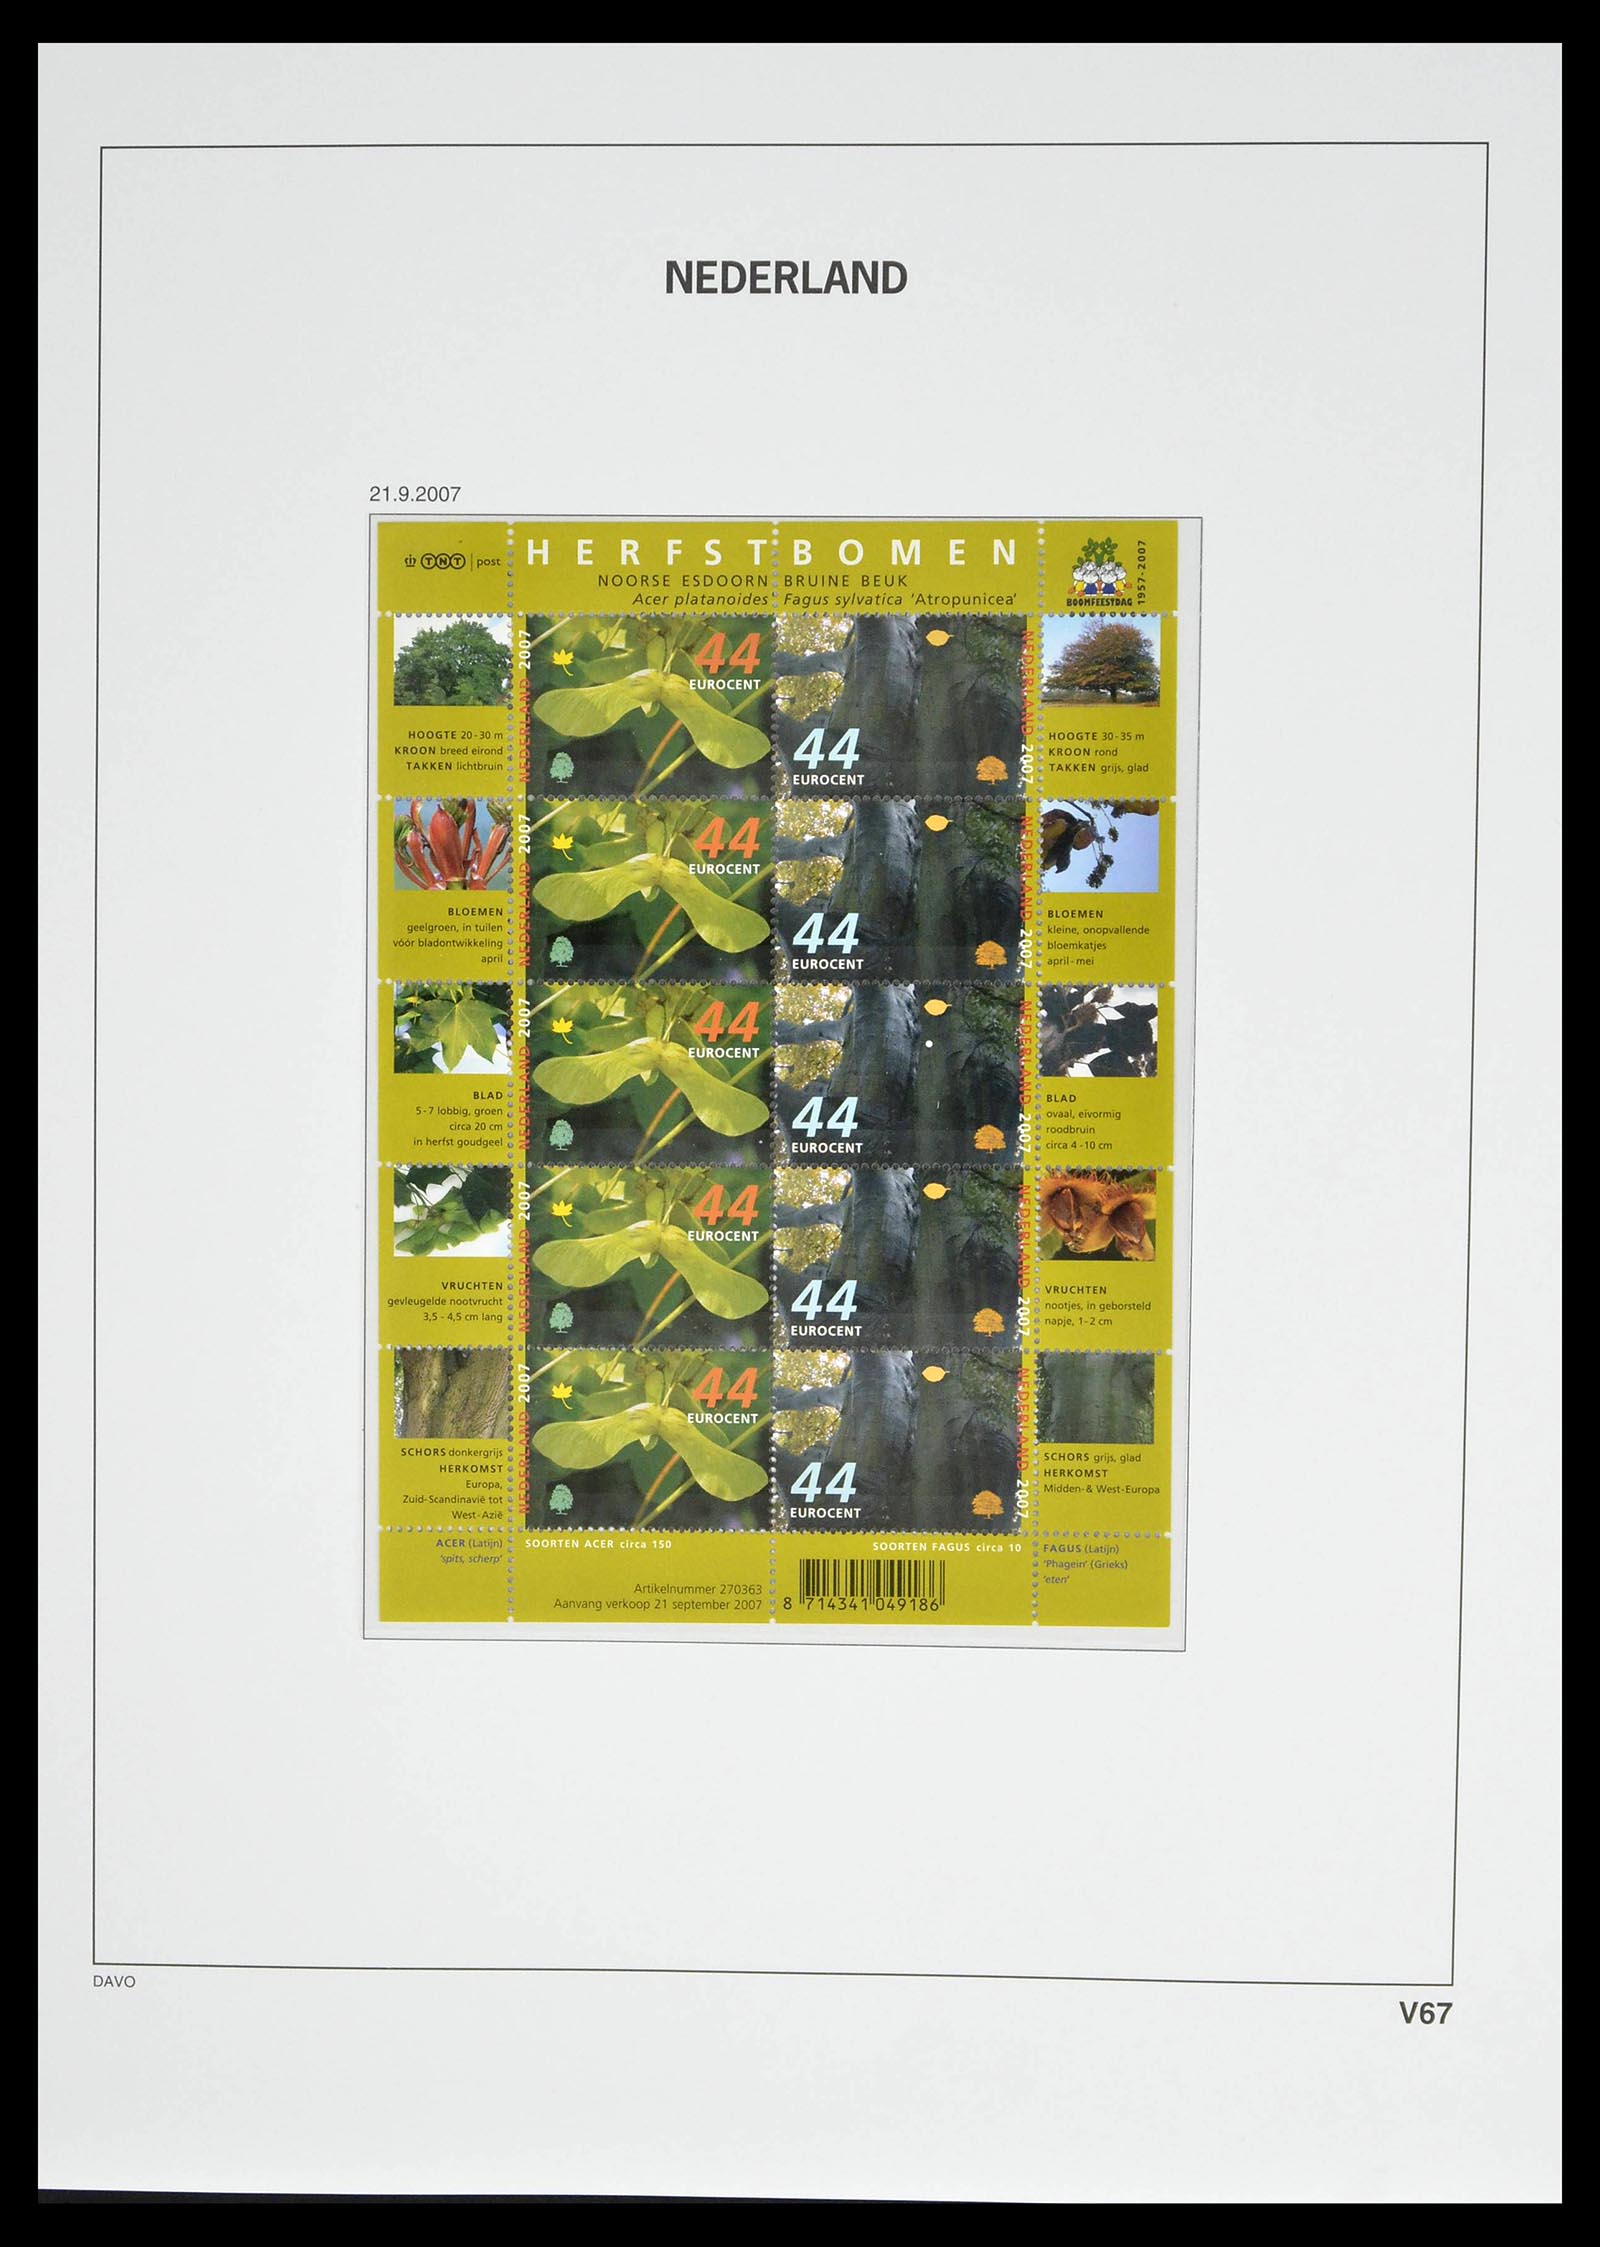 39134 0081 - Stamp collection 39134 Netherlands sheetlets 1992-2019!